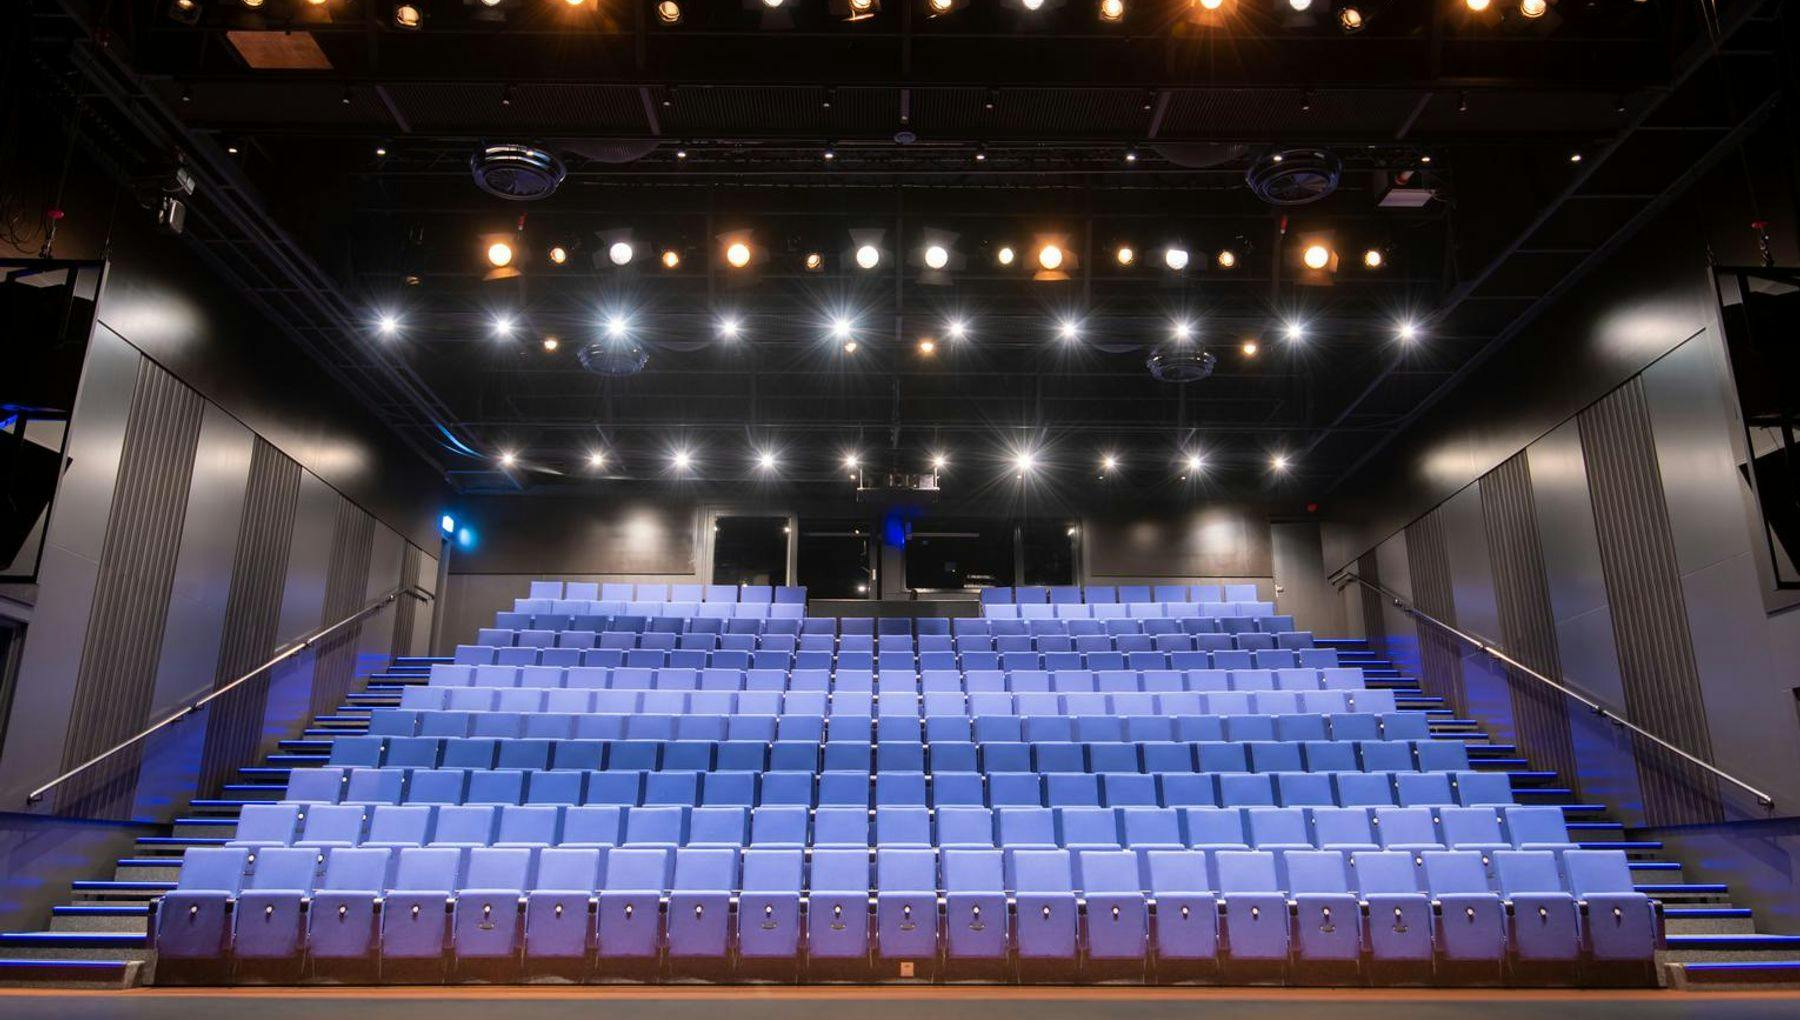 Meervaart theatre audience seats